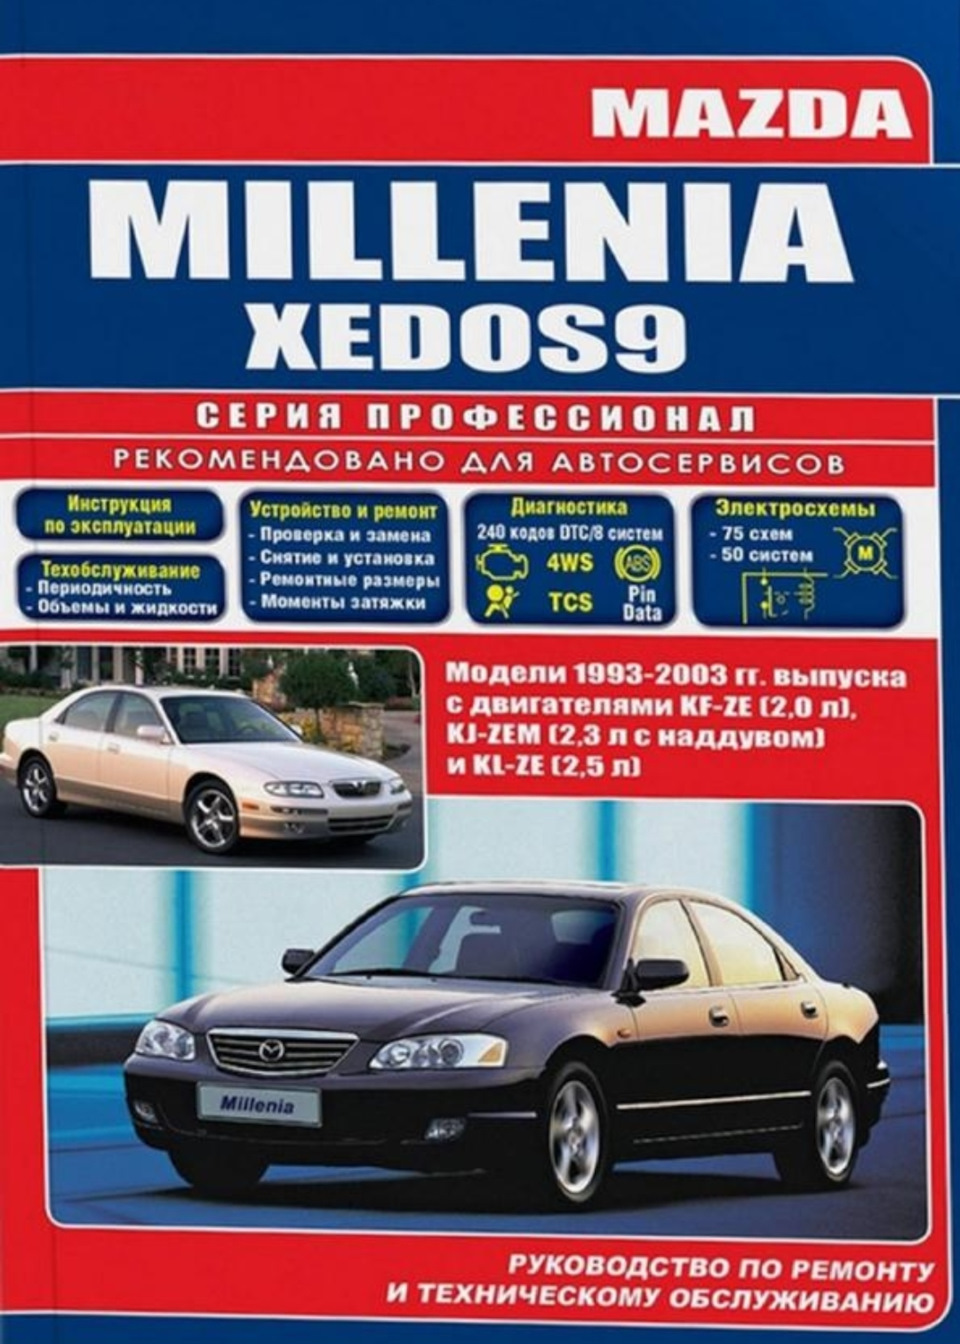 Mazda инструкция. Руководство по техническому обслуживанию и ремонту. Мануал Мазда Кседос 9 2.5. Автомобили 2003 года выпуска. Mazda Millenia авто ру.